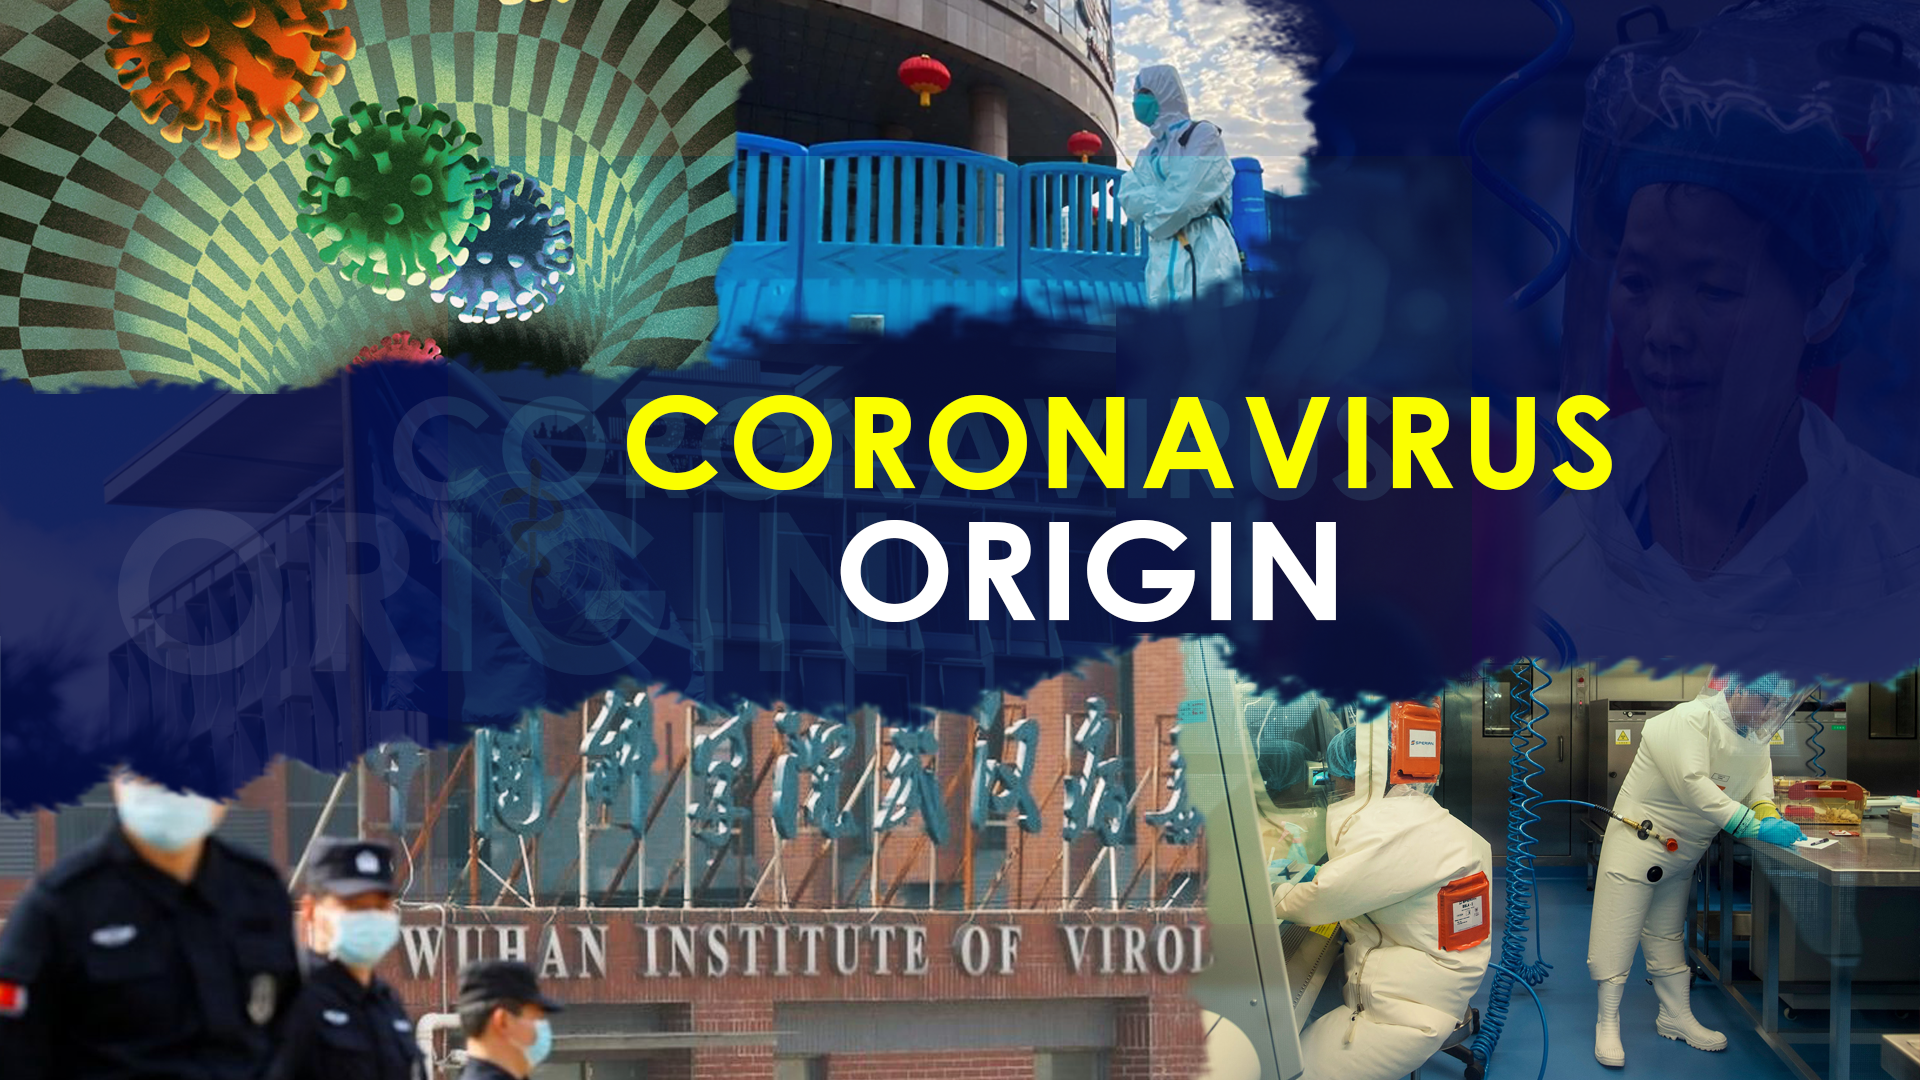 Coronavirus origins questioned again